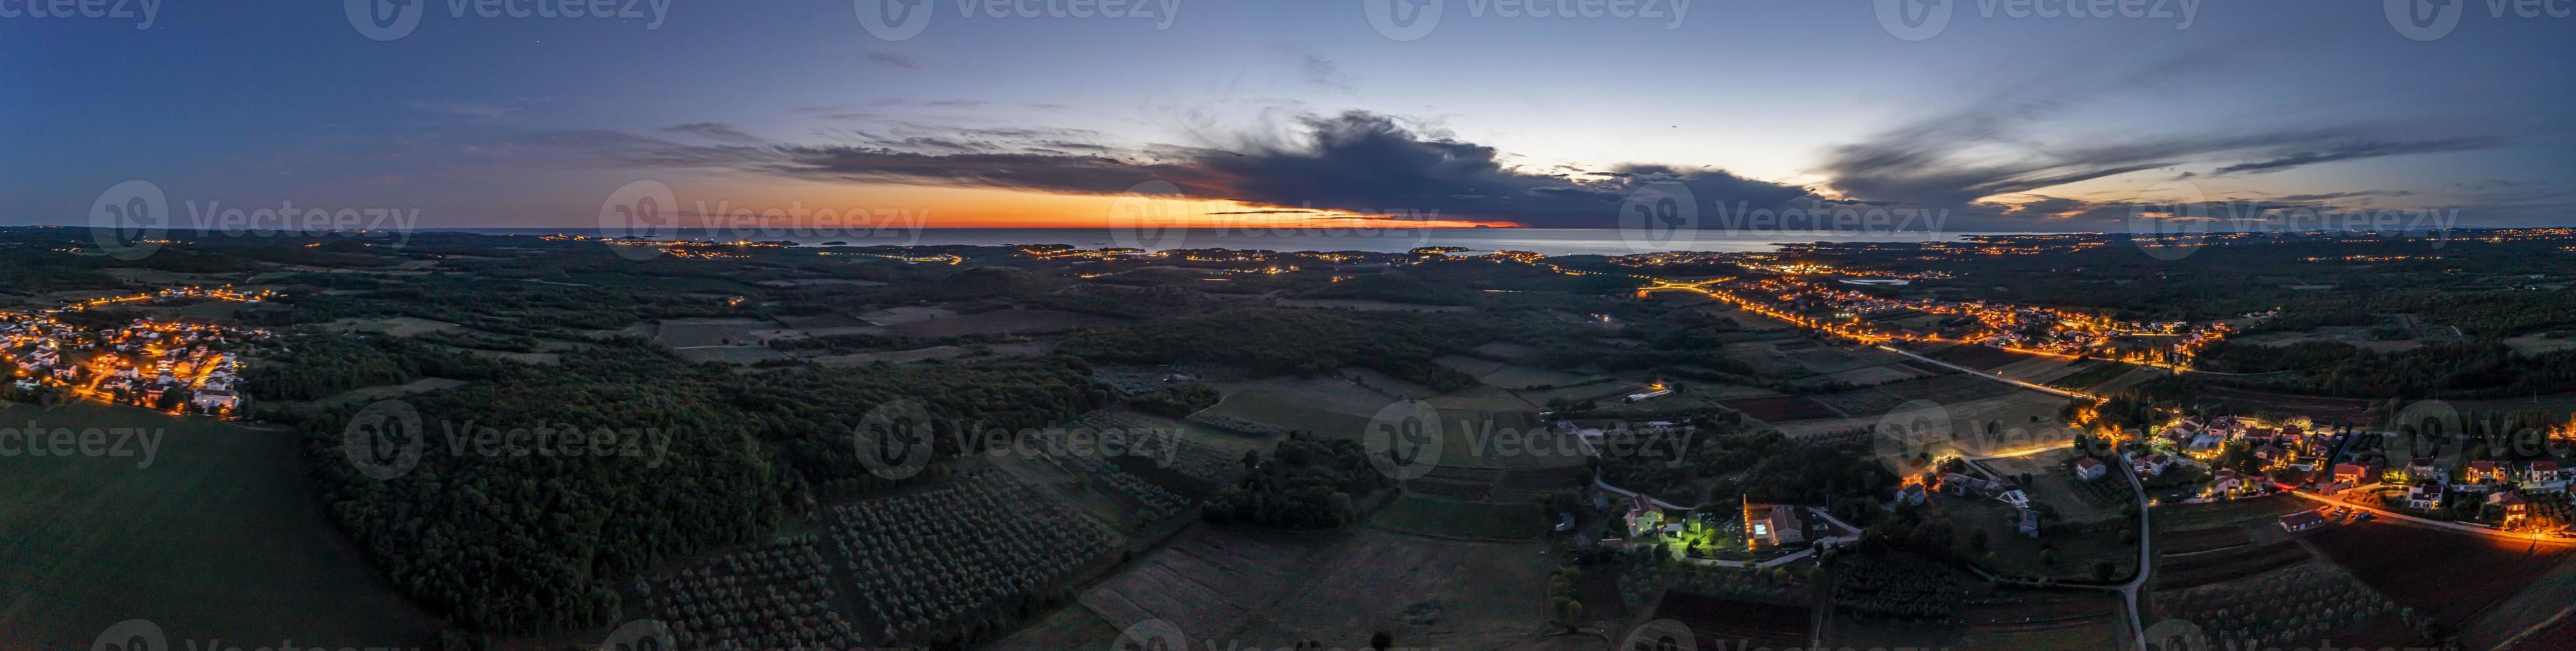 dar panorama over- Istrisch adriatisch kust in de buurt porec genomen van hoog hoogte Bij zonsondergang foto